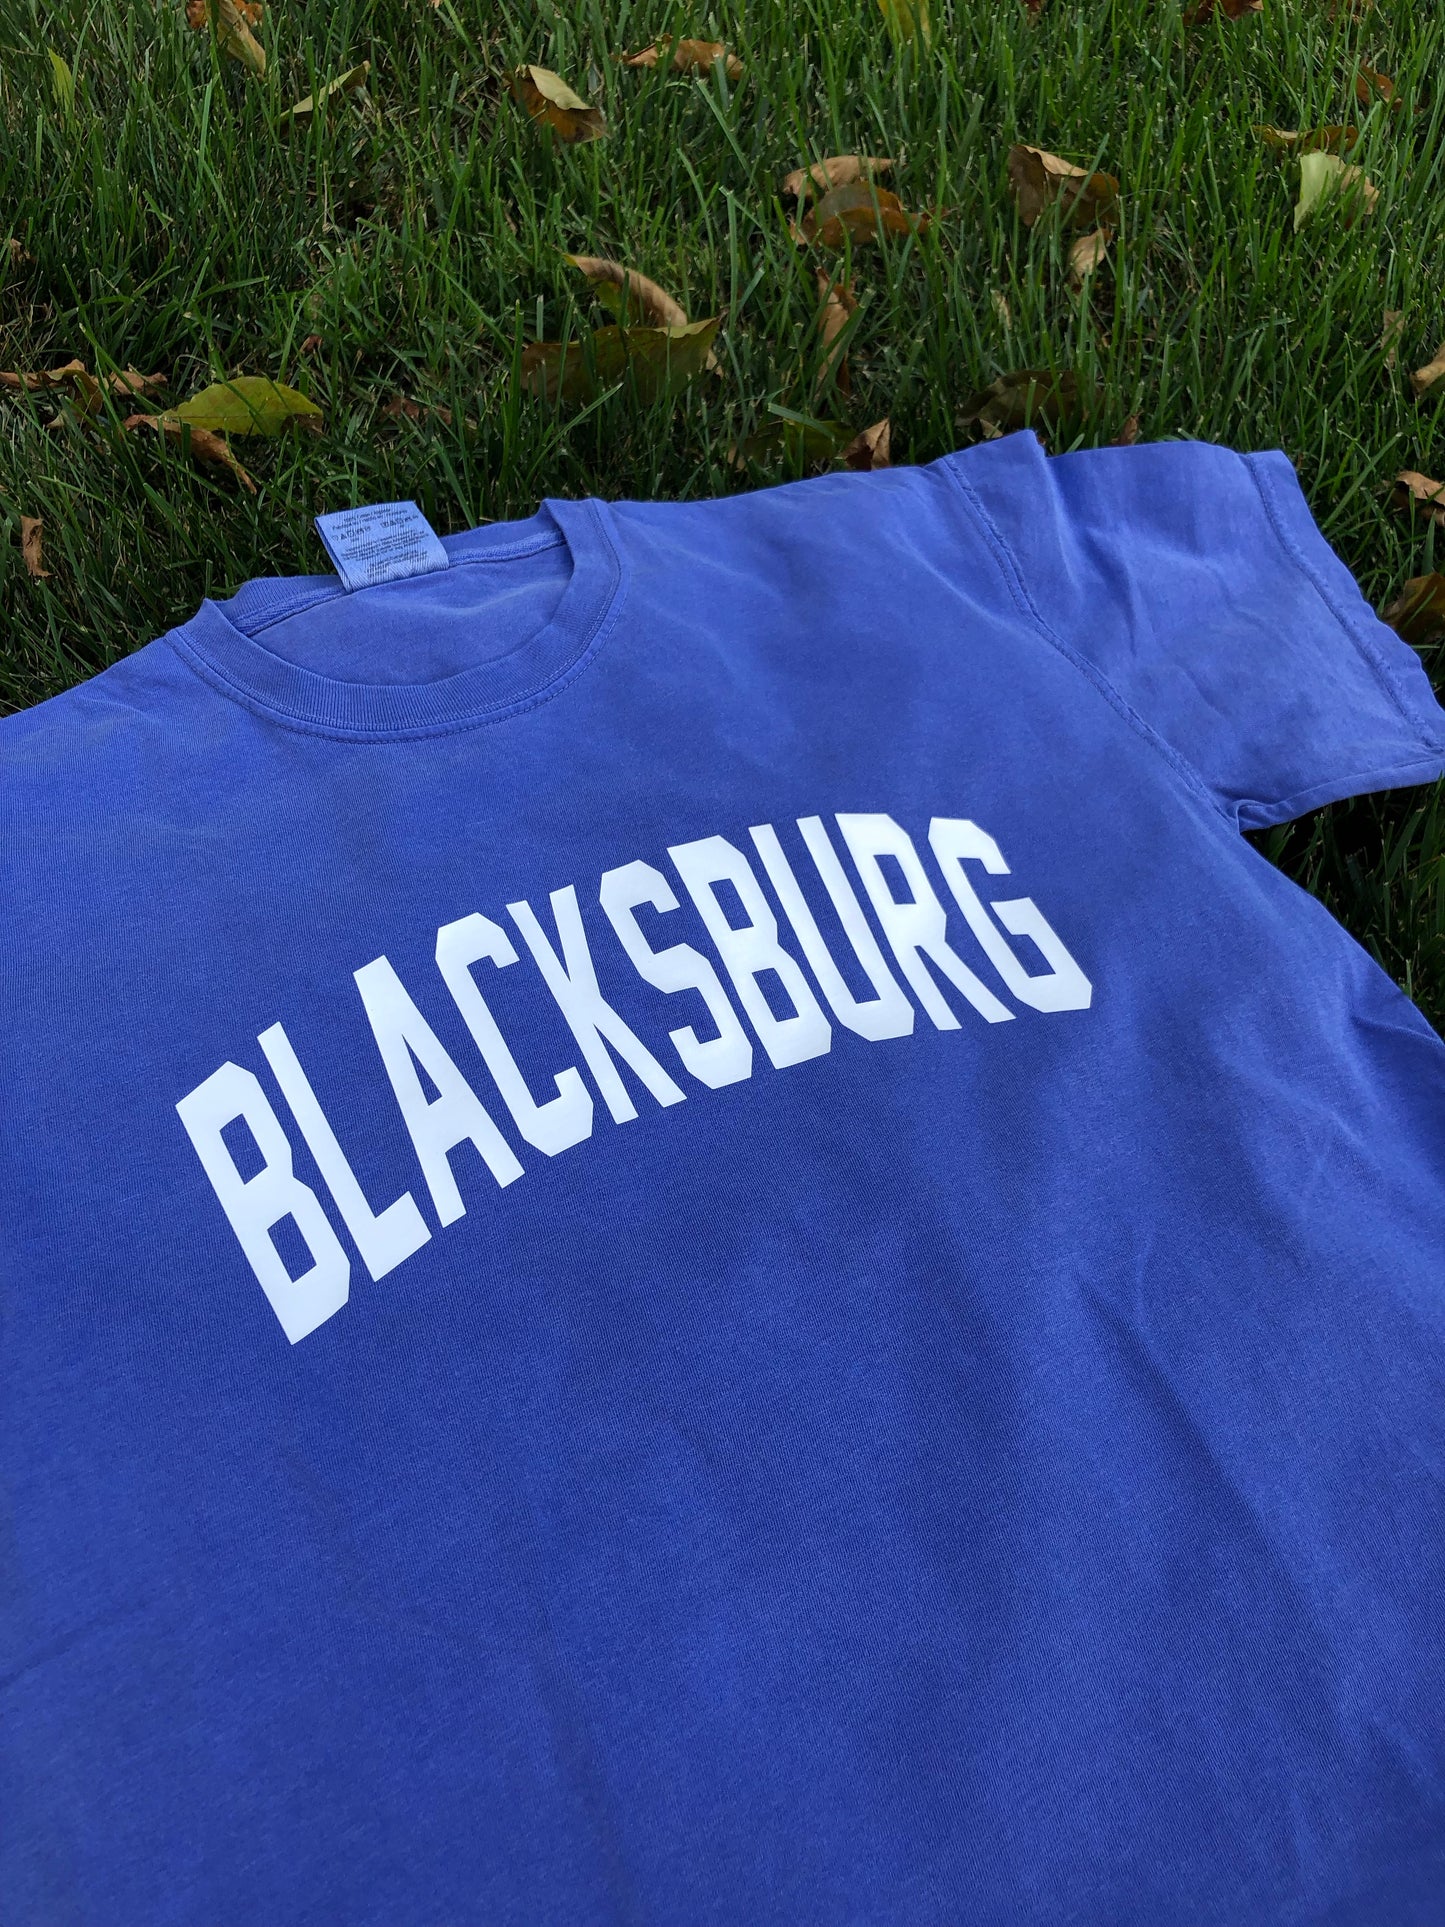 Blacksburg Shirt